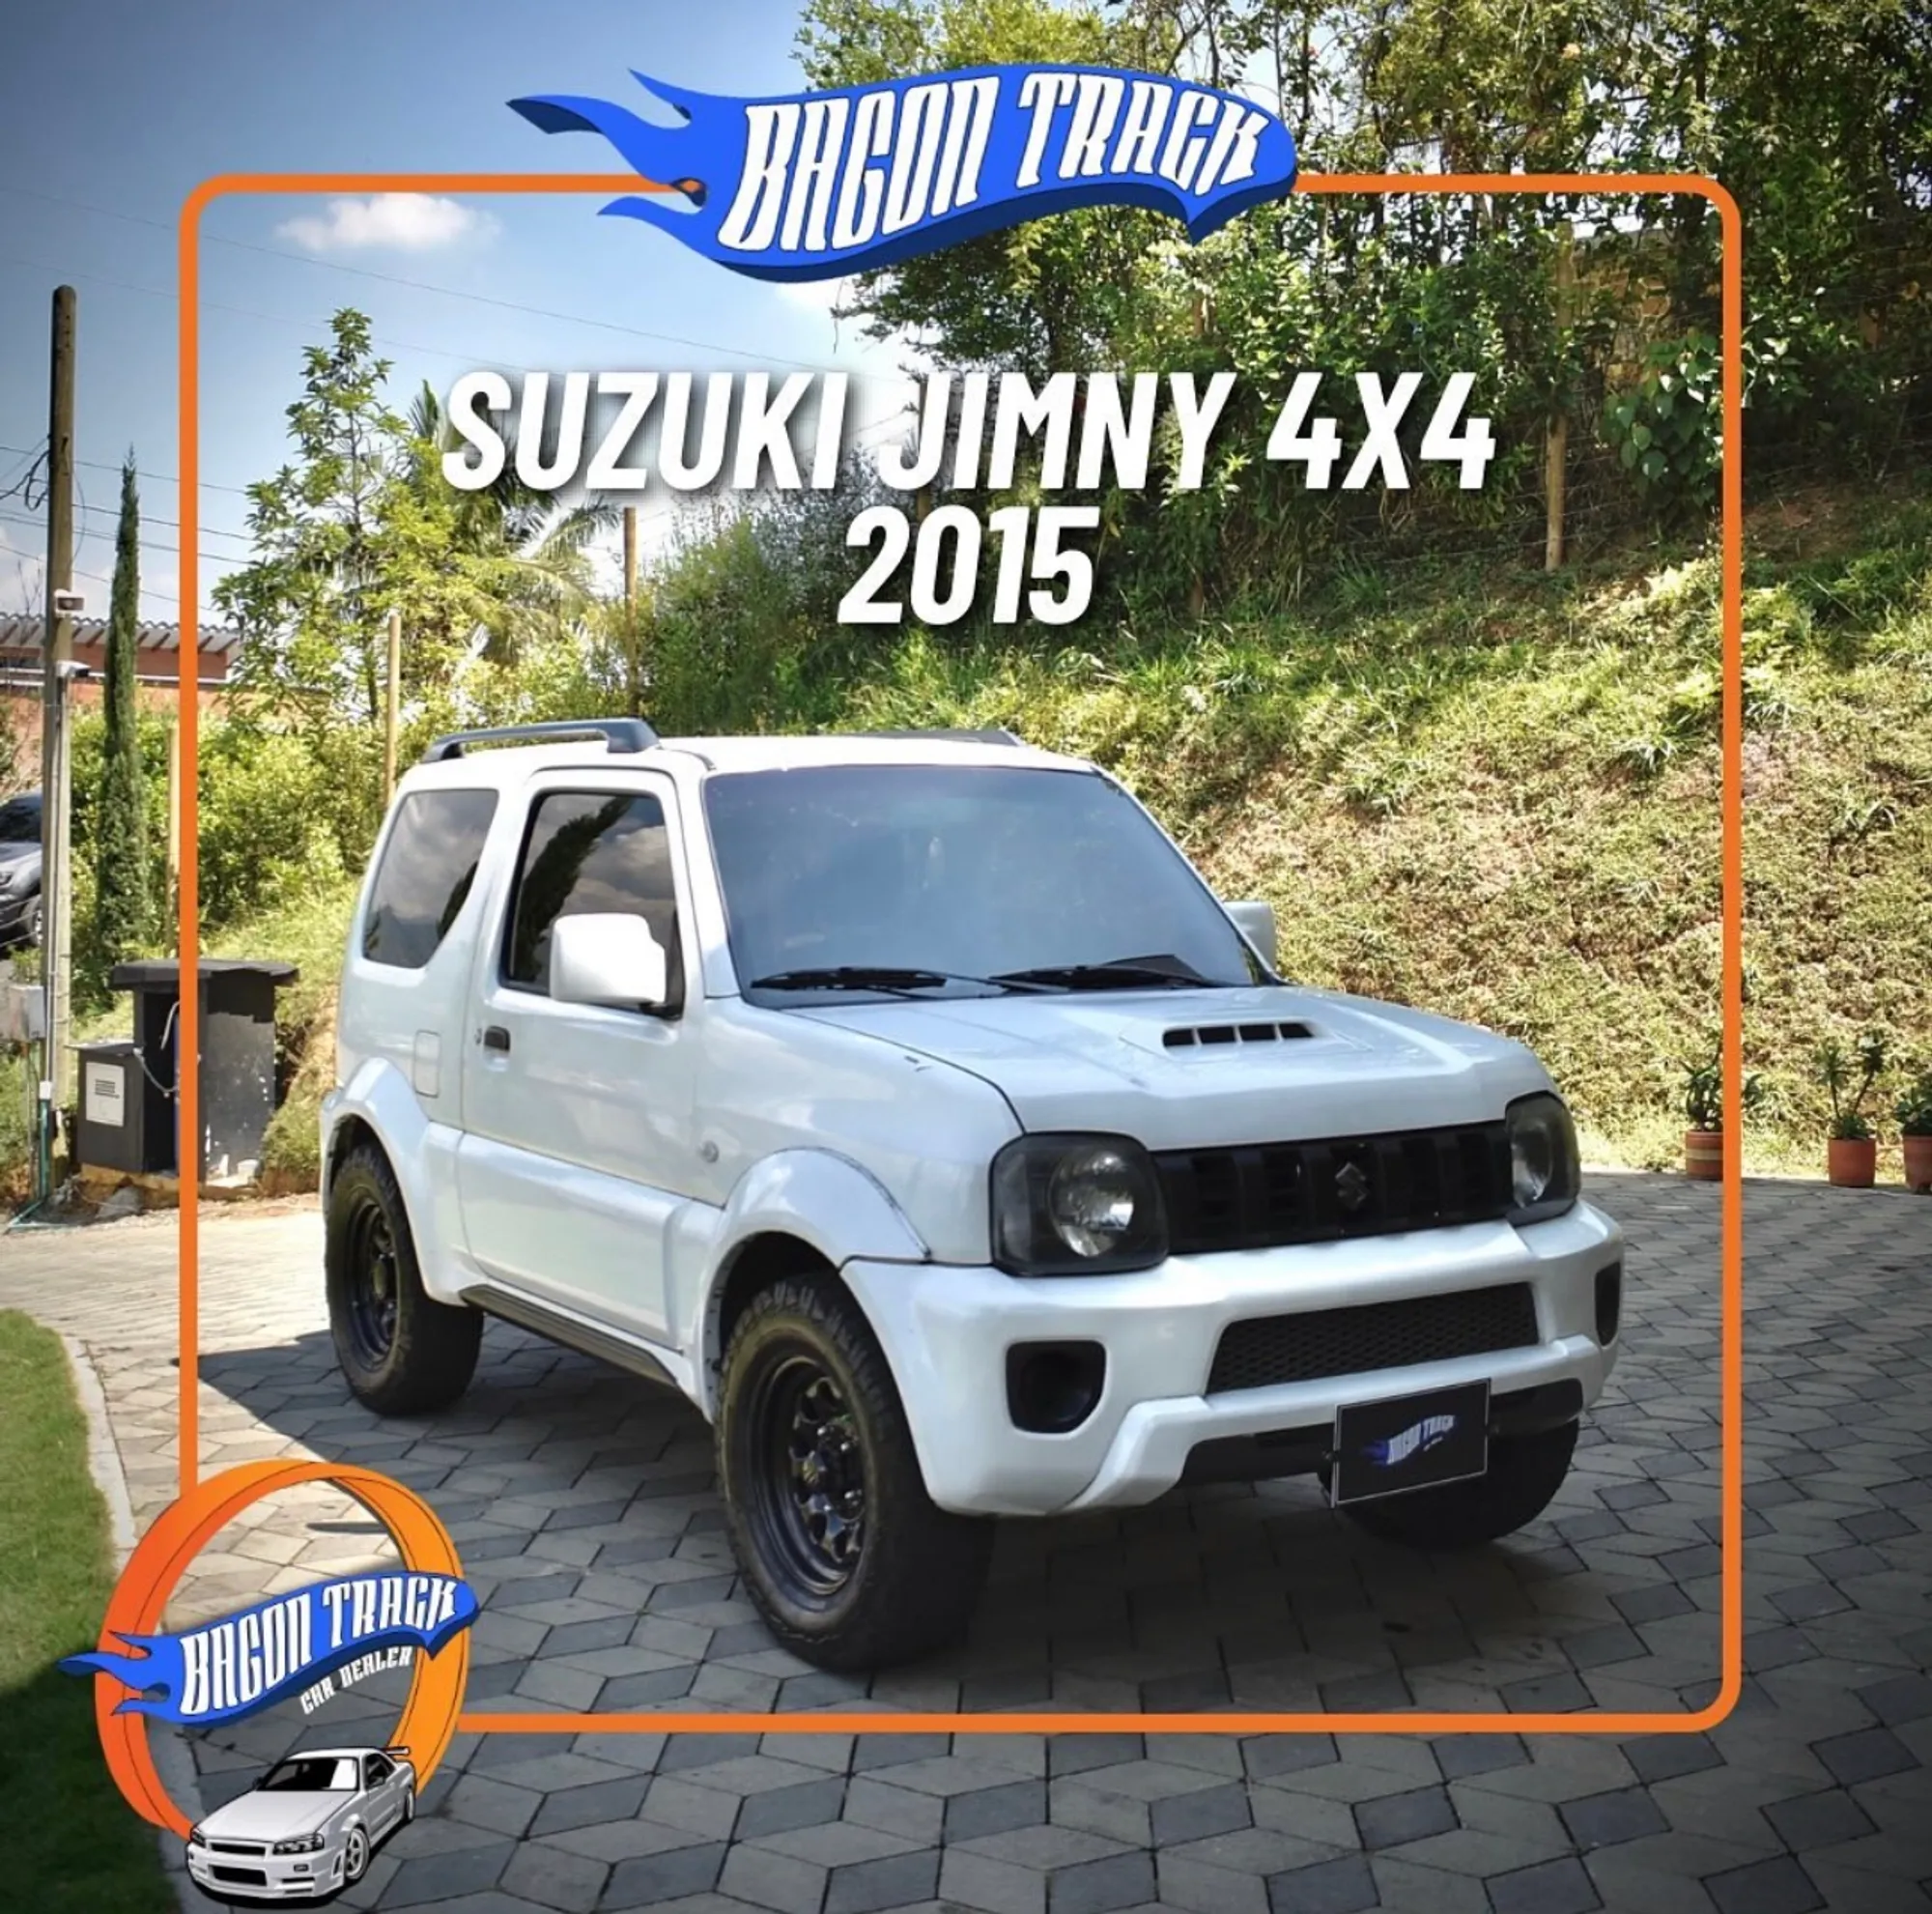 Suzuki Jimny 4x4 -1.3 Jlx- 2015